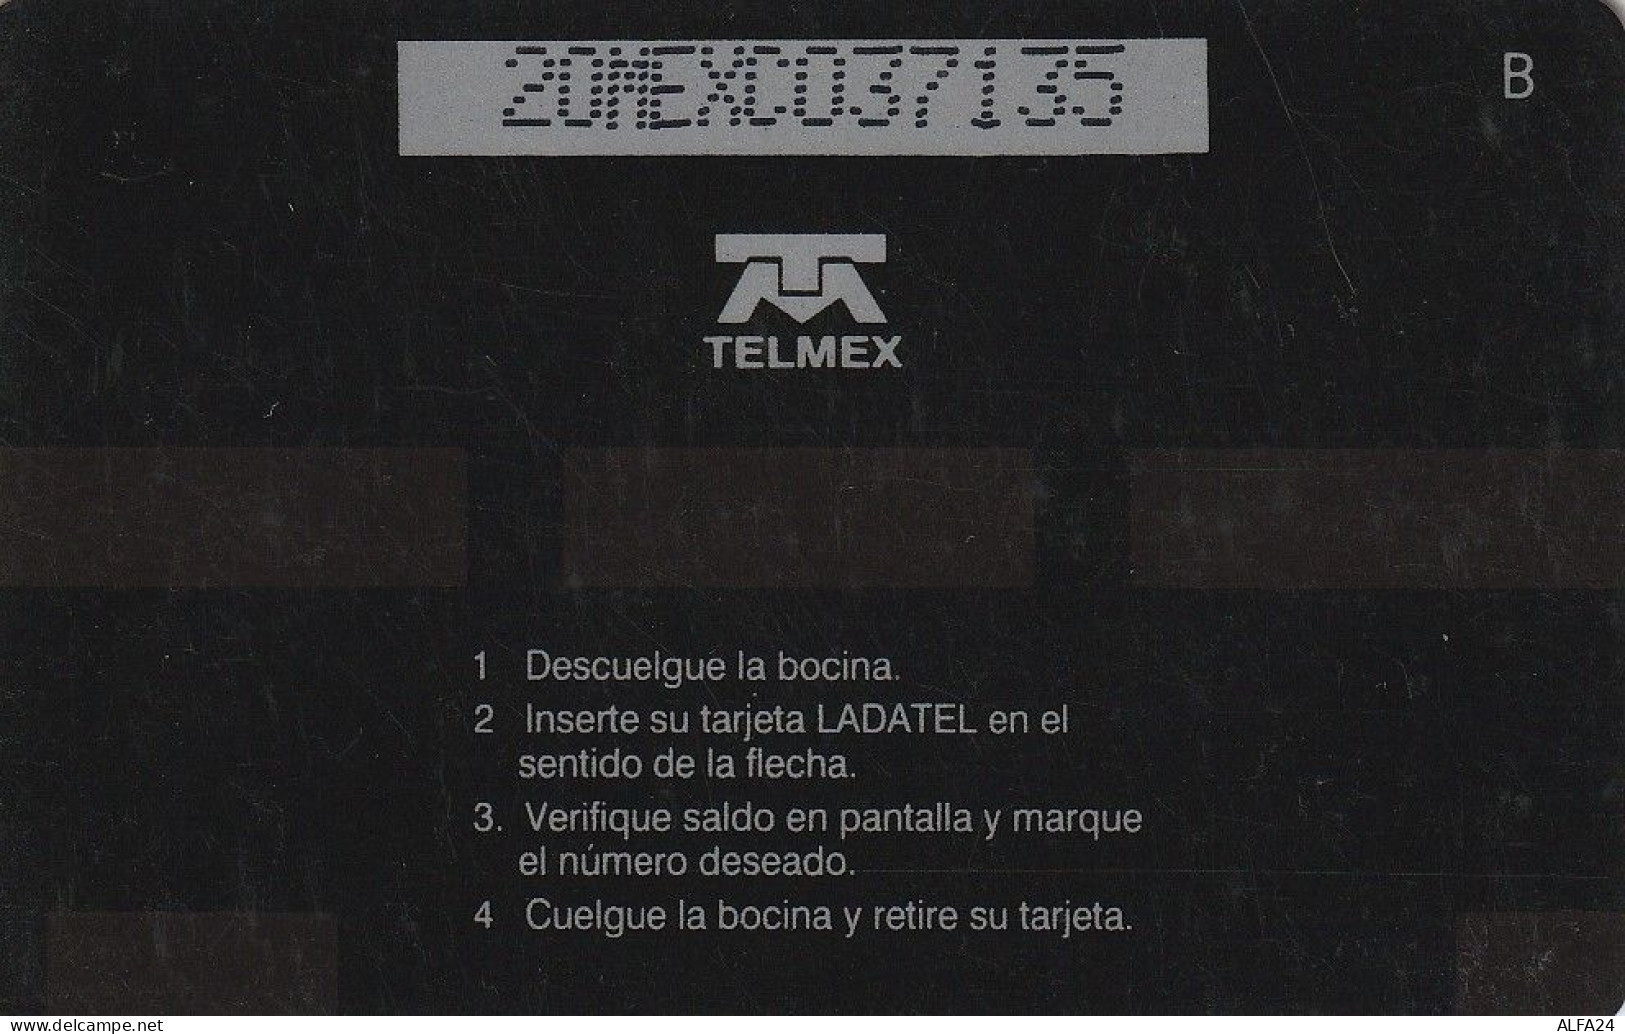 PHONE CARD MESSICO GPT (E67.26.3 - Mexico